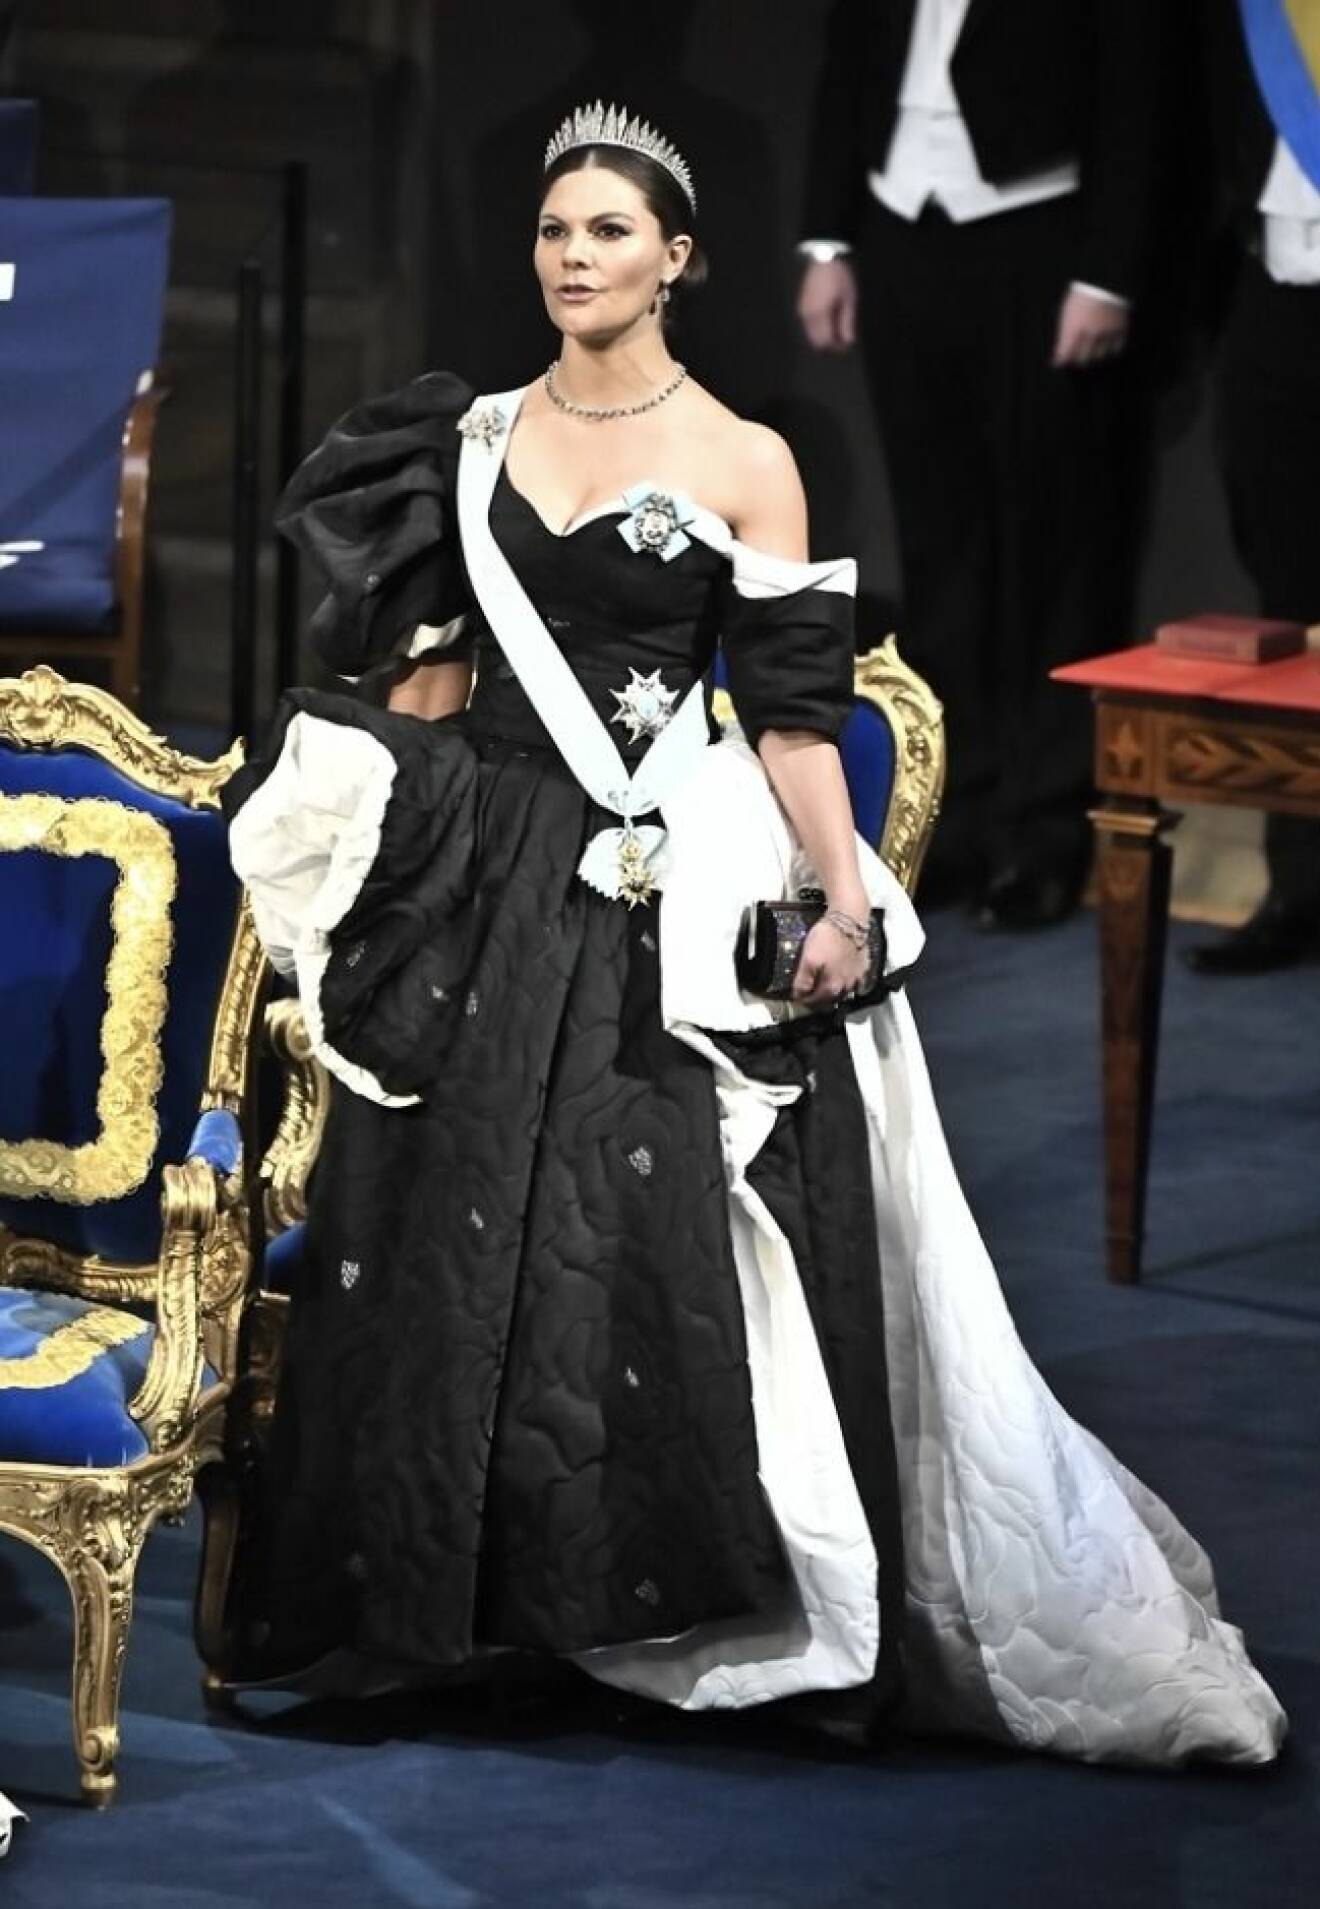 Kronprinsessan i svart och vit klänning